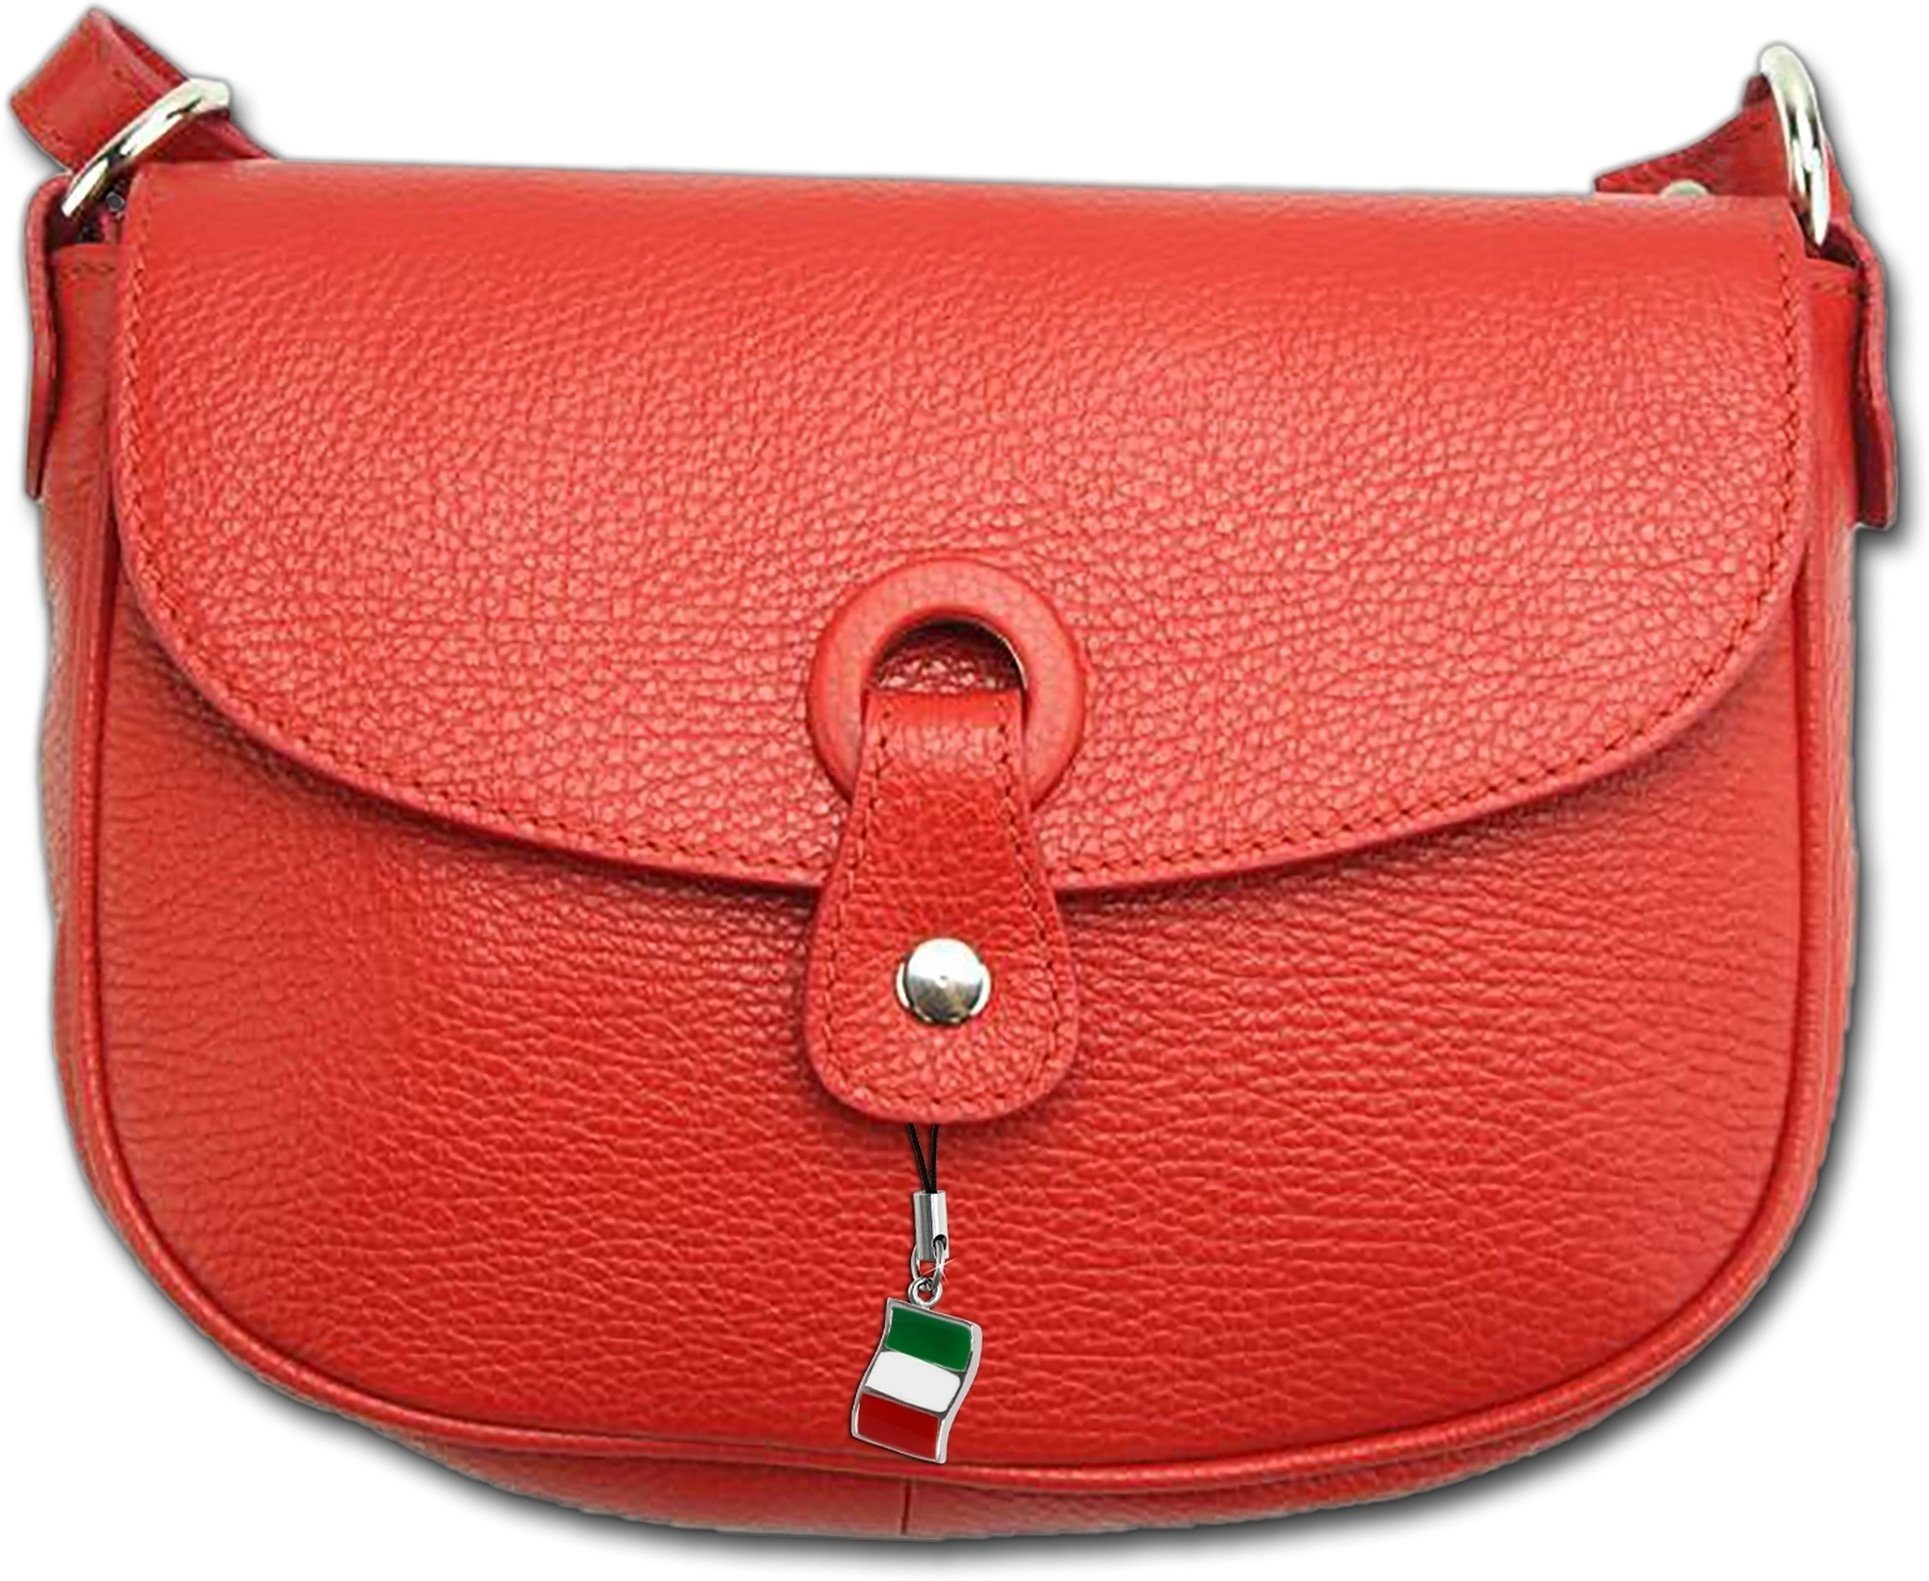 FLORENCE Umhängetasche Florence Leder Damen Handtasche rot, Damen Tasche  Echtleder rot, Made-In Italy